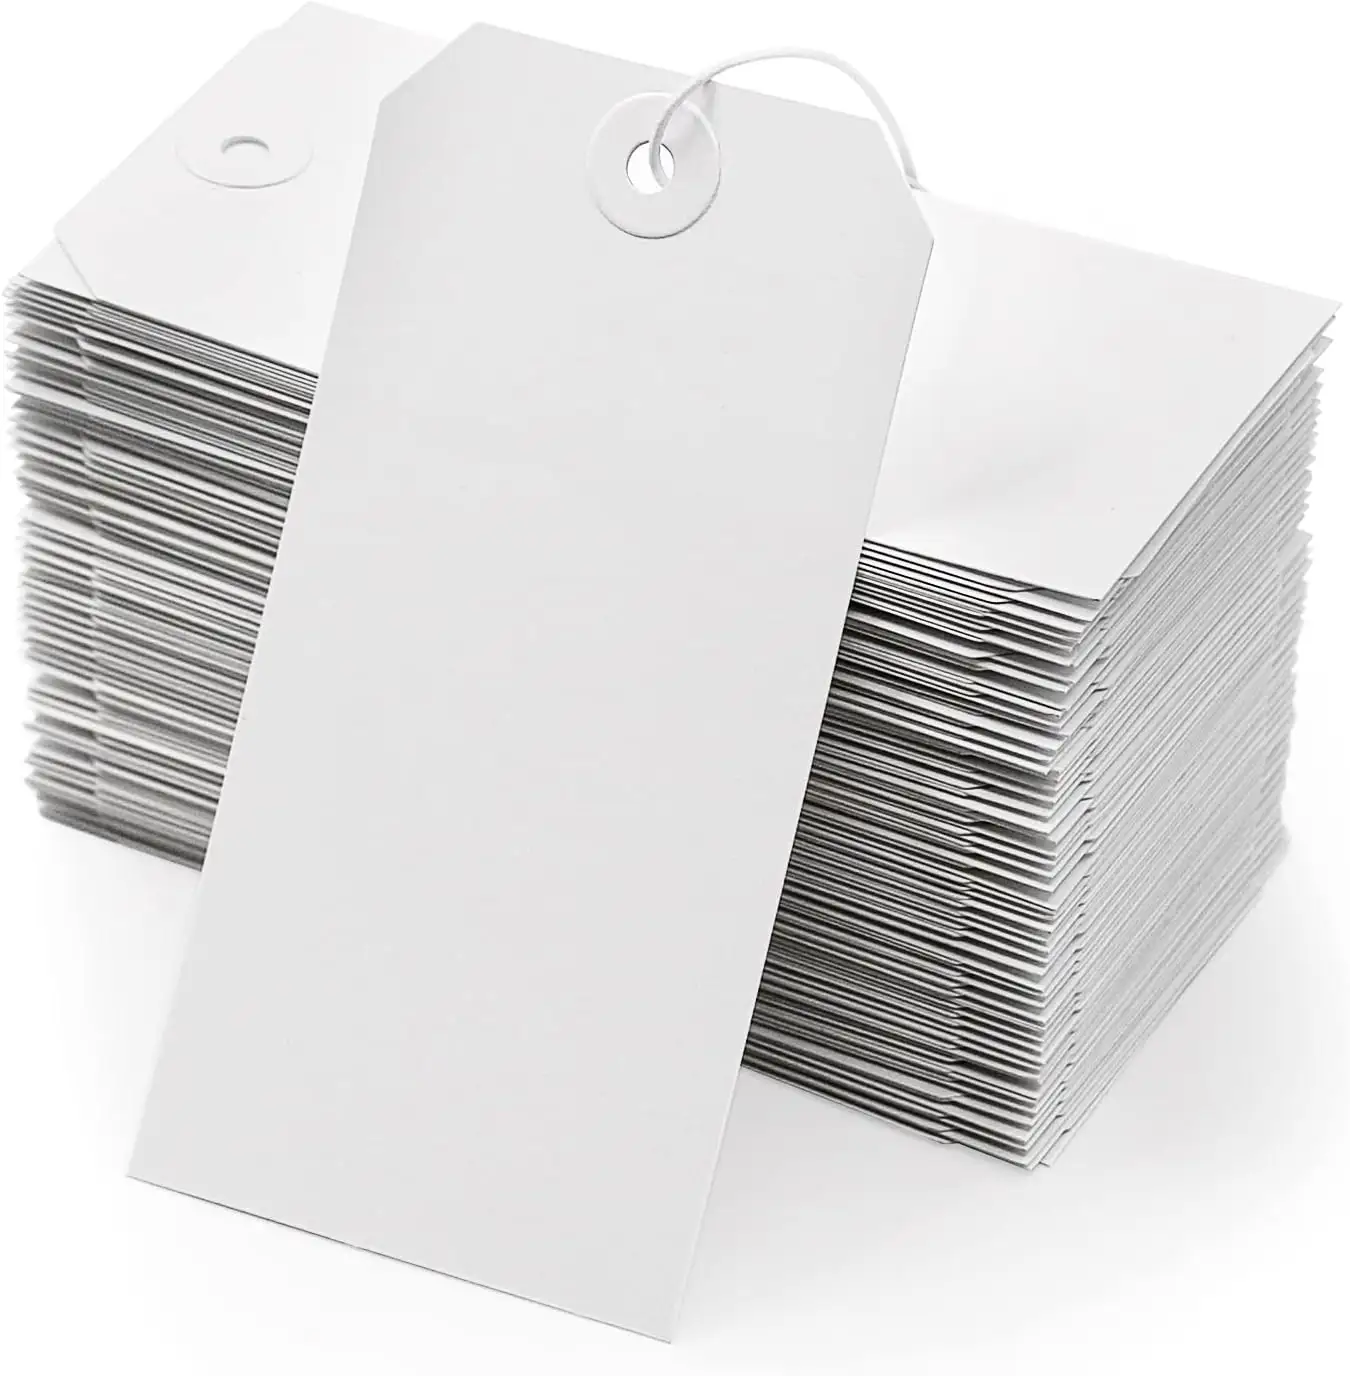 Geri dönüşümlü beyaz boş nakliye etiketleri katı delik işaretleme dize hattı karton asılı kağıt hangtag ile ek envanter